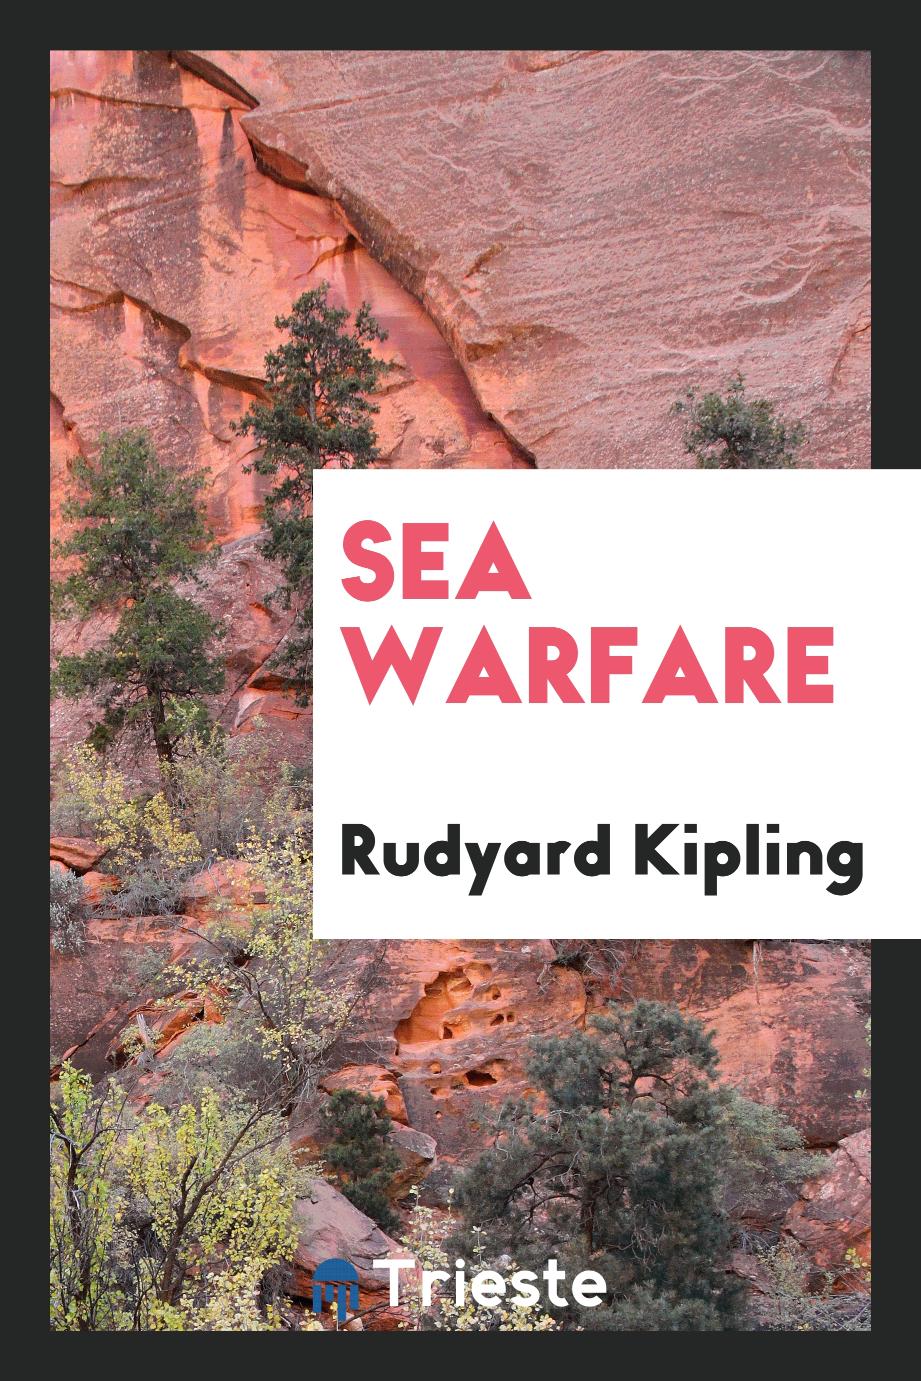 Sea warfare